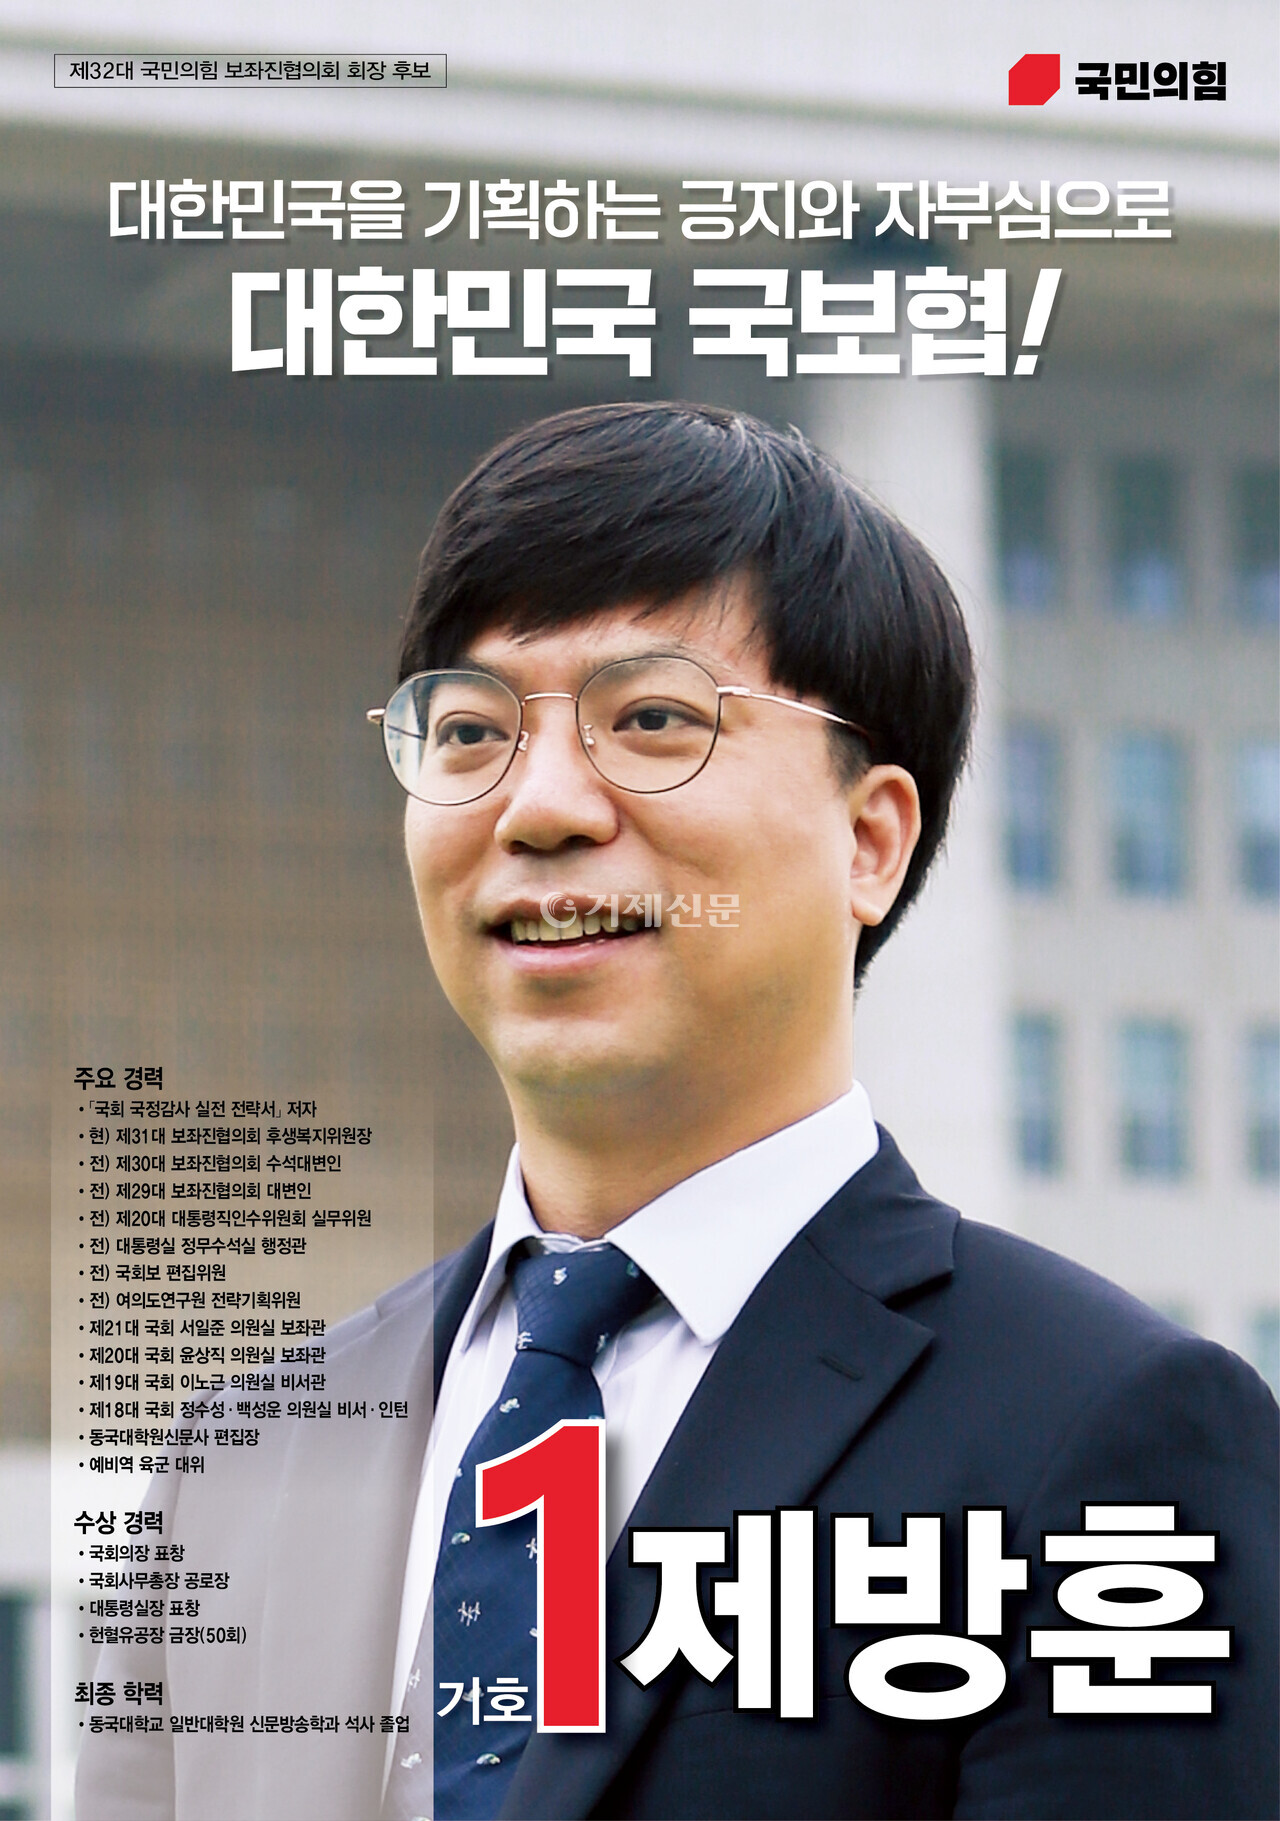 제32대 국보협 선거 당시 제방훈 회장의 선거 포스터